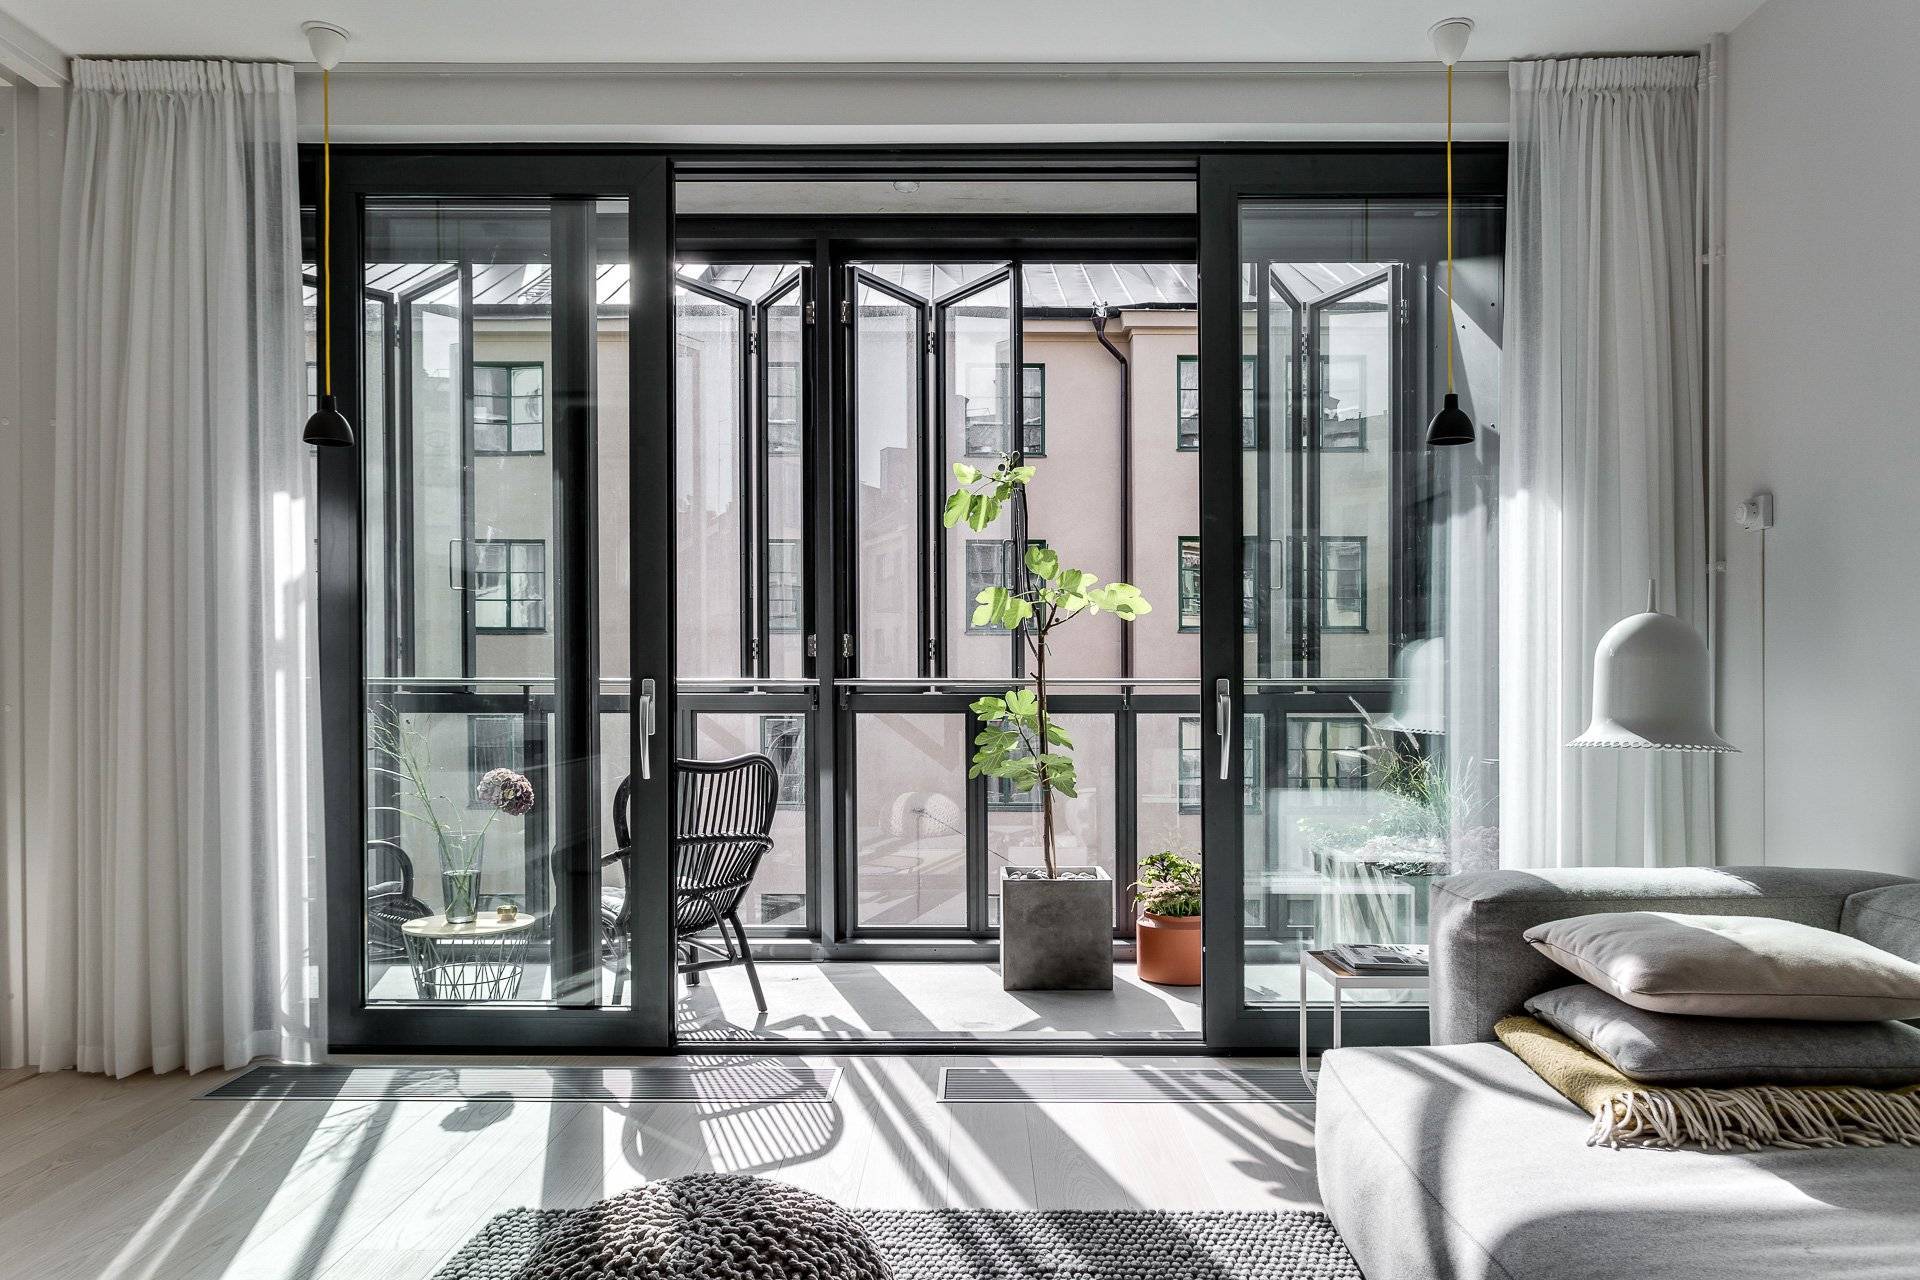 Французские окна: разновидности панорамных конструкций, преимущества и применение в интерьере квартиры